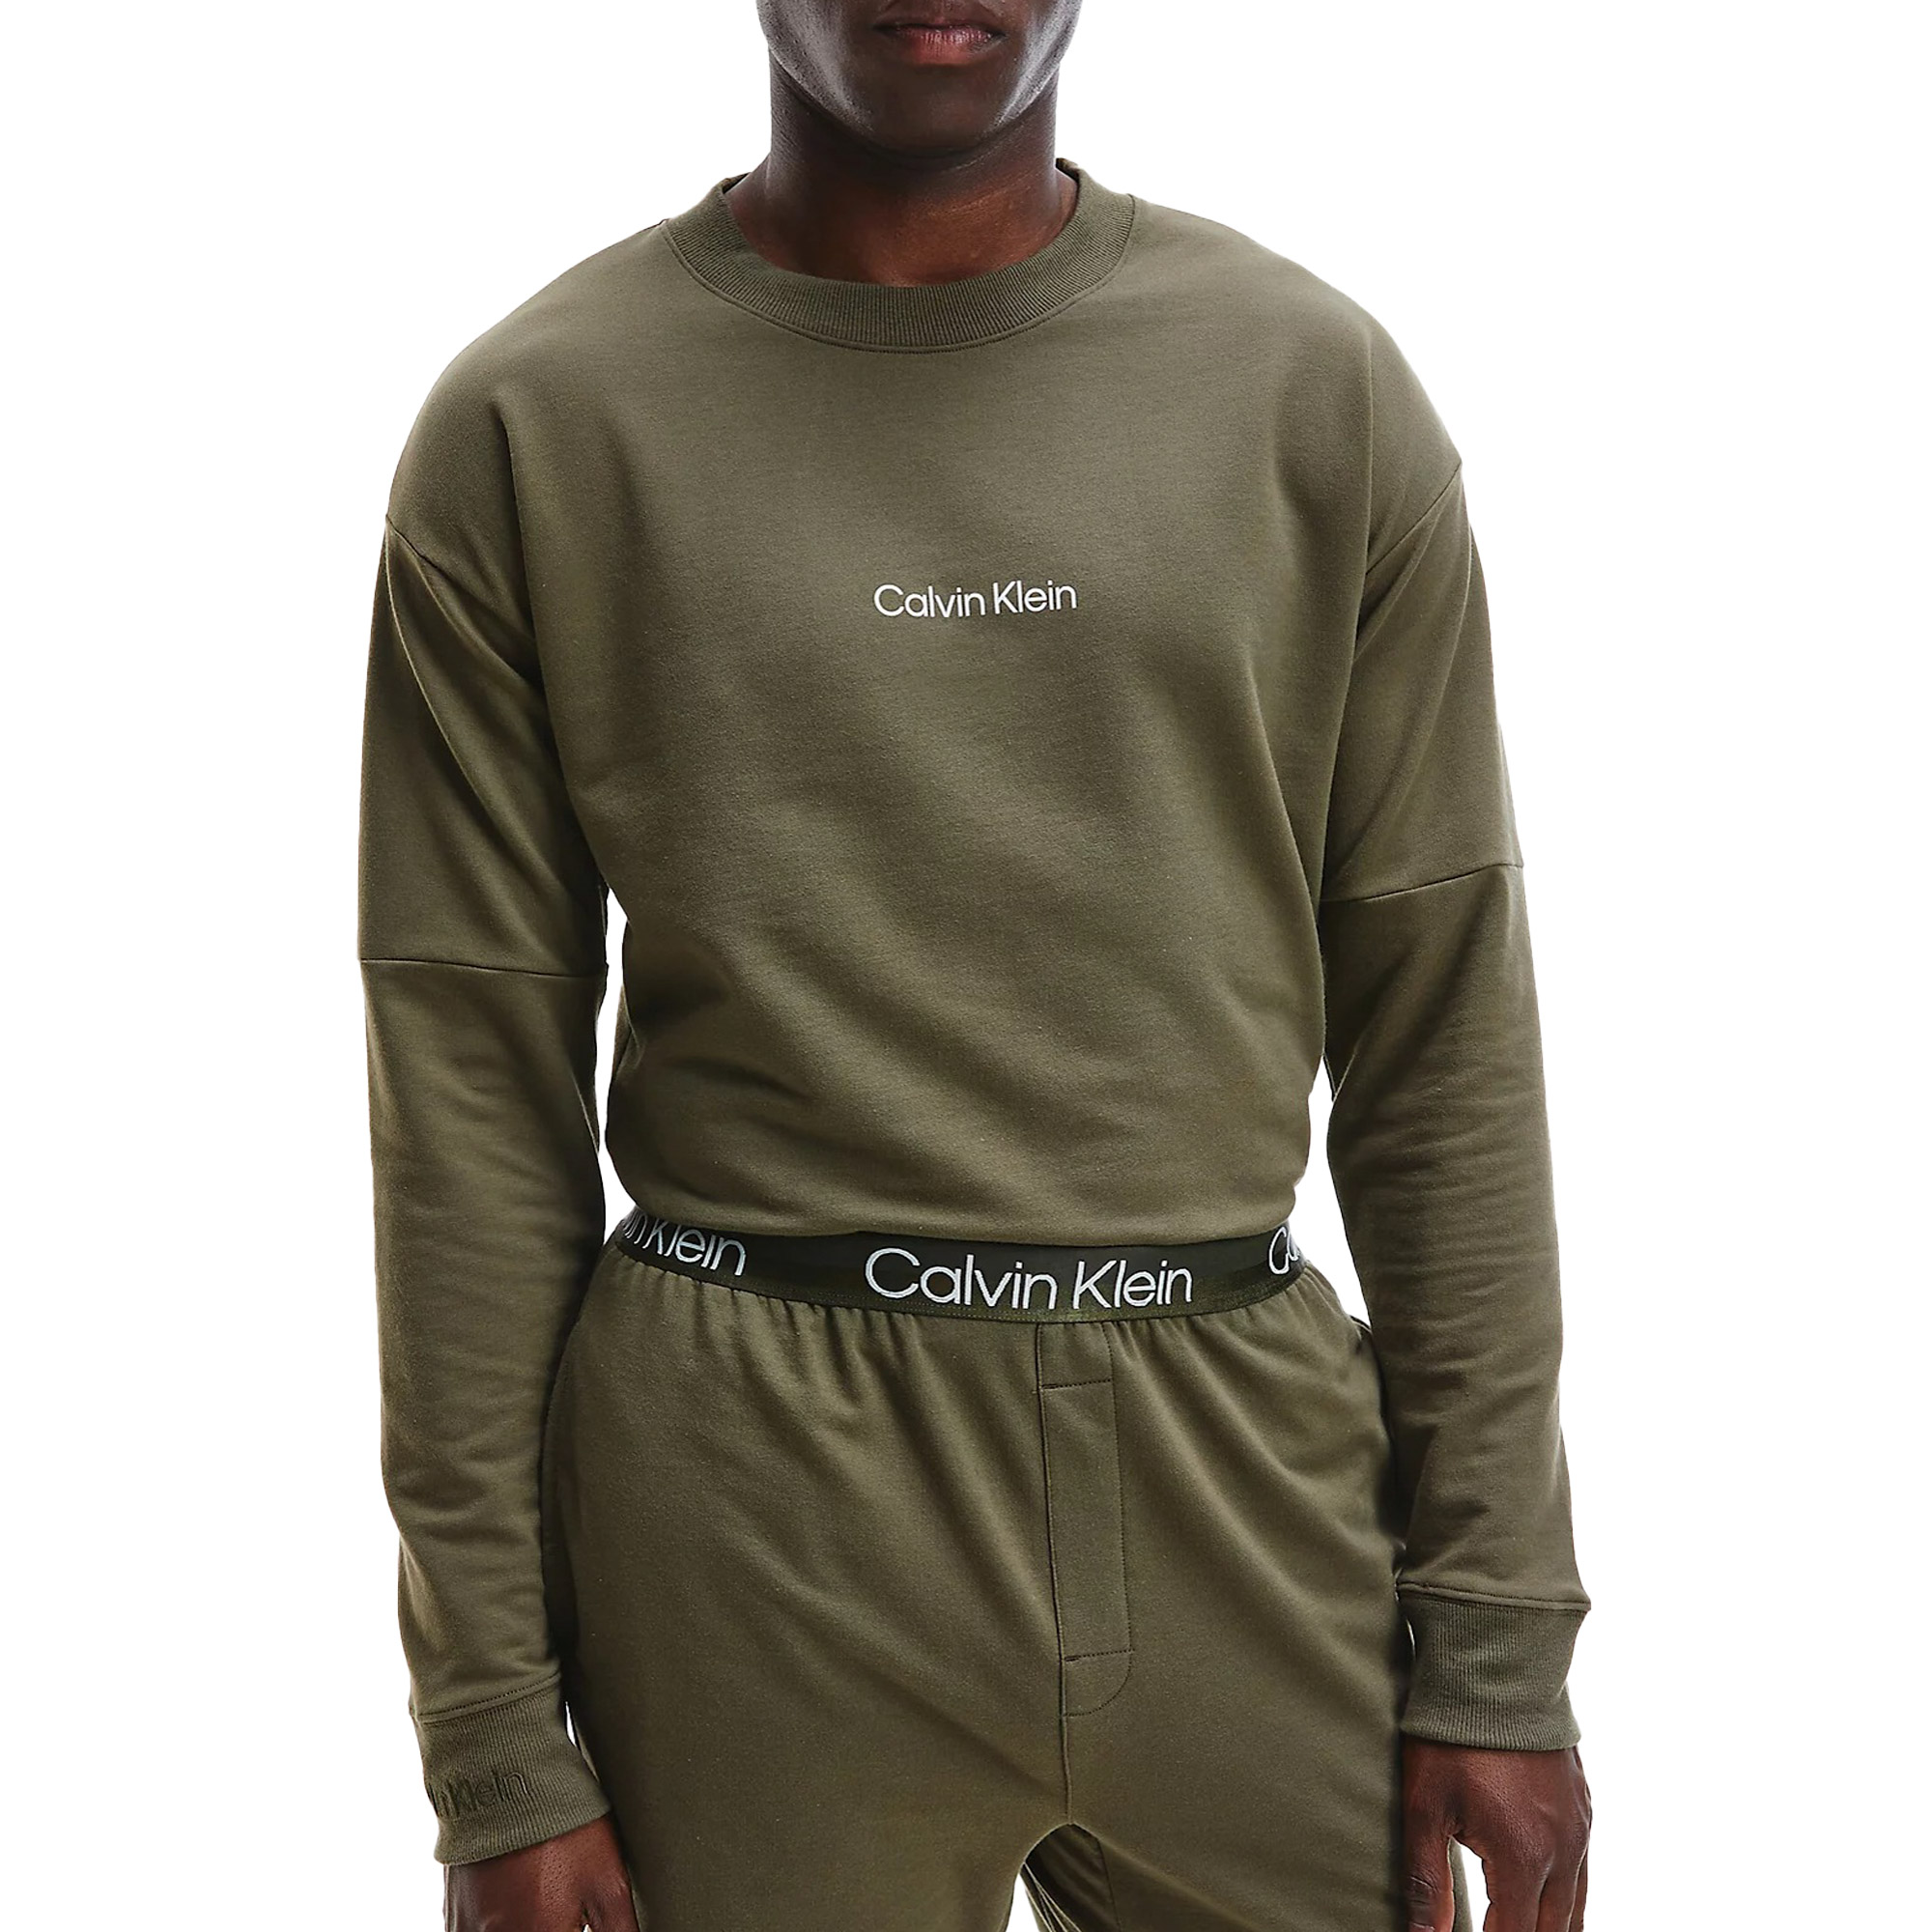 Sweat Shirt Calvin Klein L/S Hommes